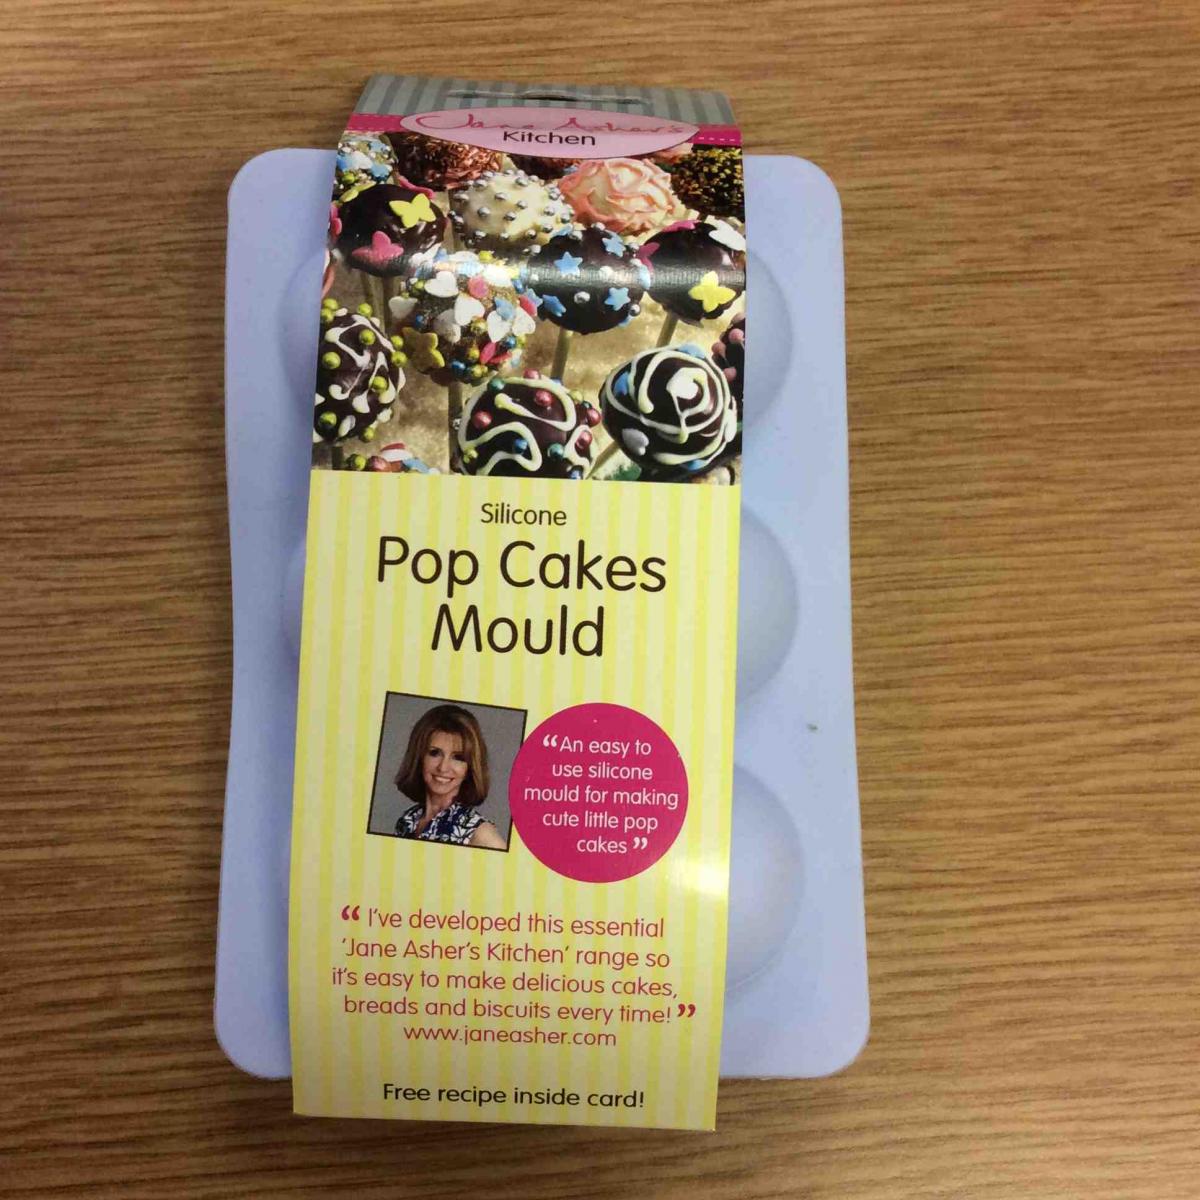 Pop cakes in packaging